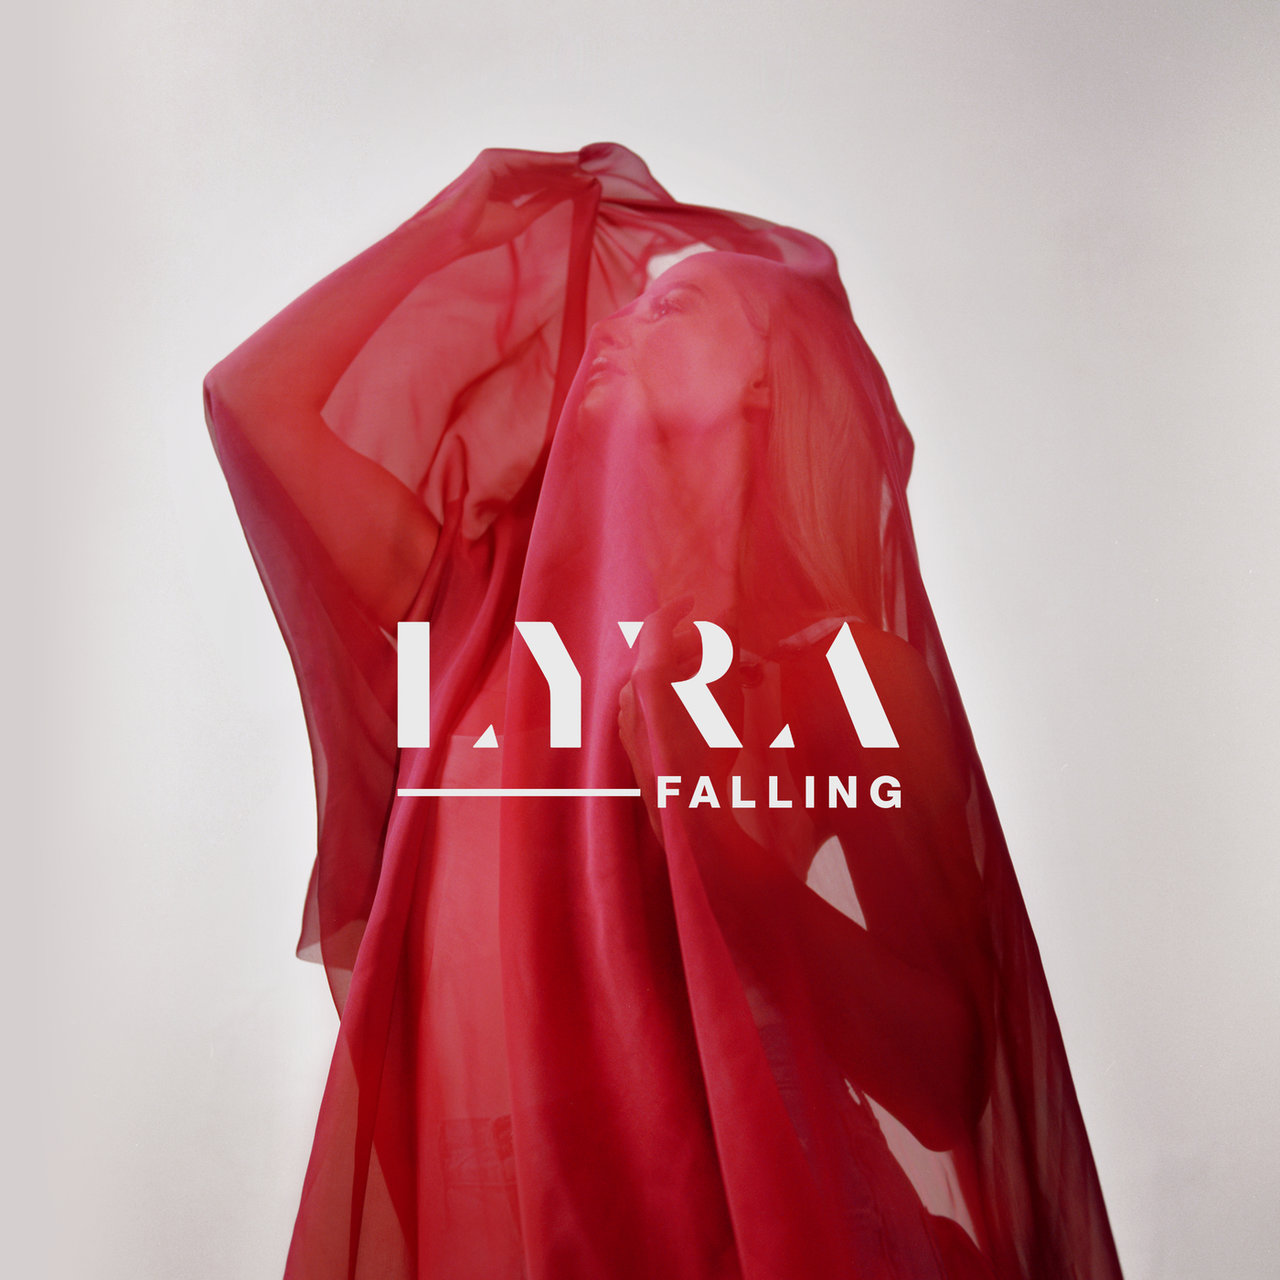 LYRA — Falling cover artwork